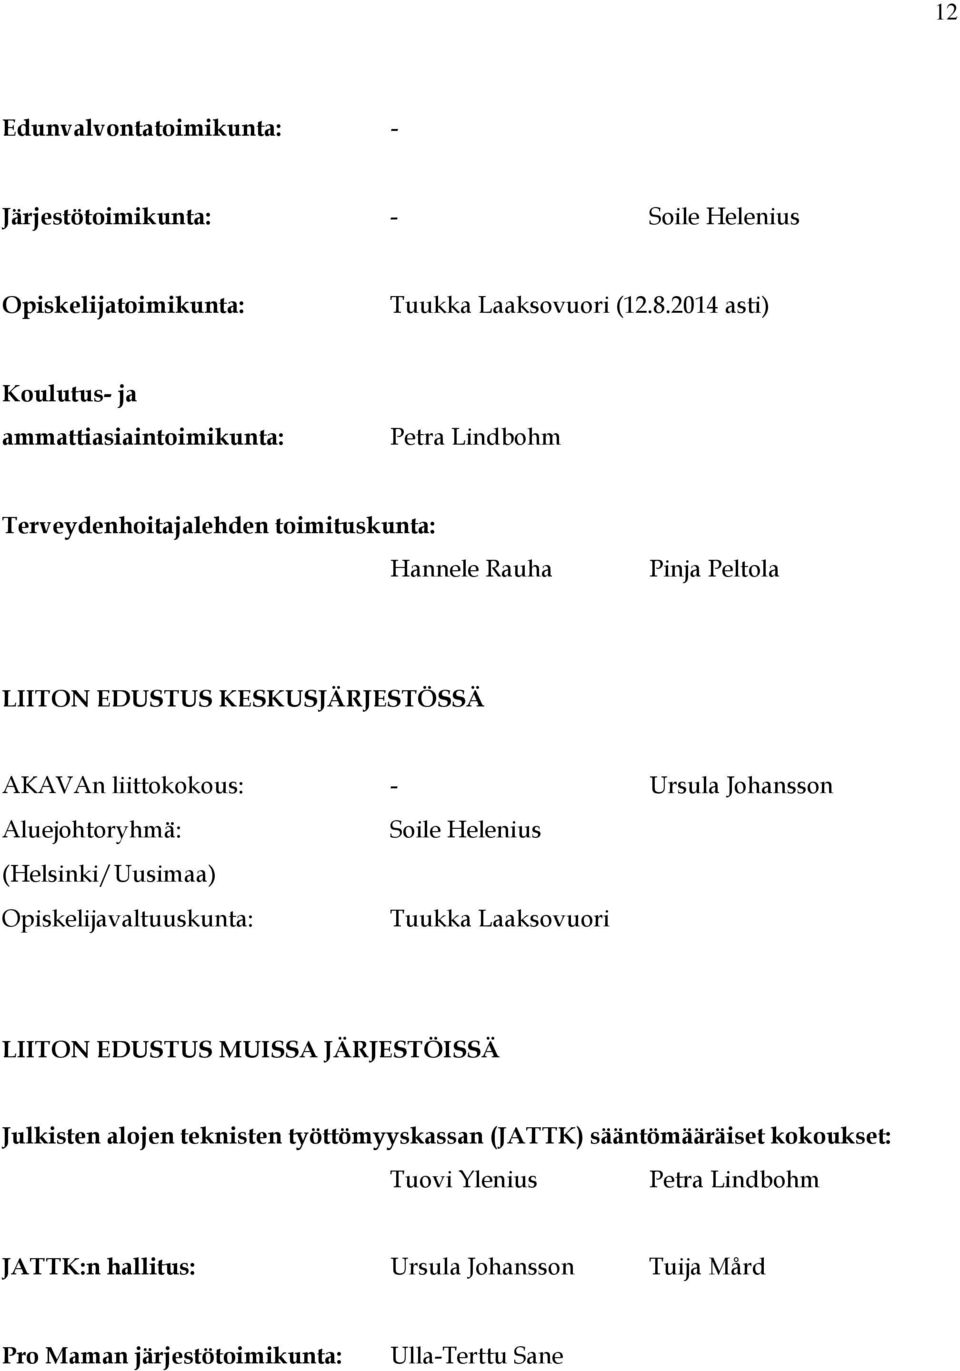 KESKUSJÄRJESTÖSSÄ AKAVAn liittokokous: - Ursula Johansson Aluejohtoryhmä: (Helsinki/Uusimaa) Opiskelijavaltuuskunta: Soile Helenius Tuukka Laaksovuori LIITON